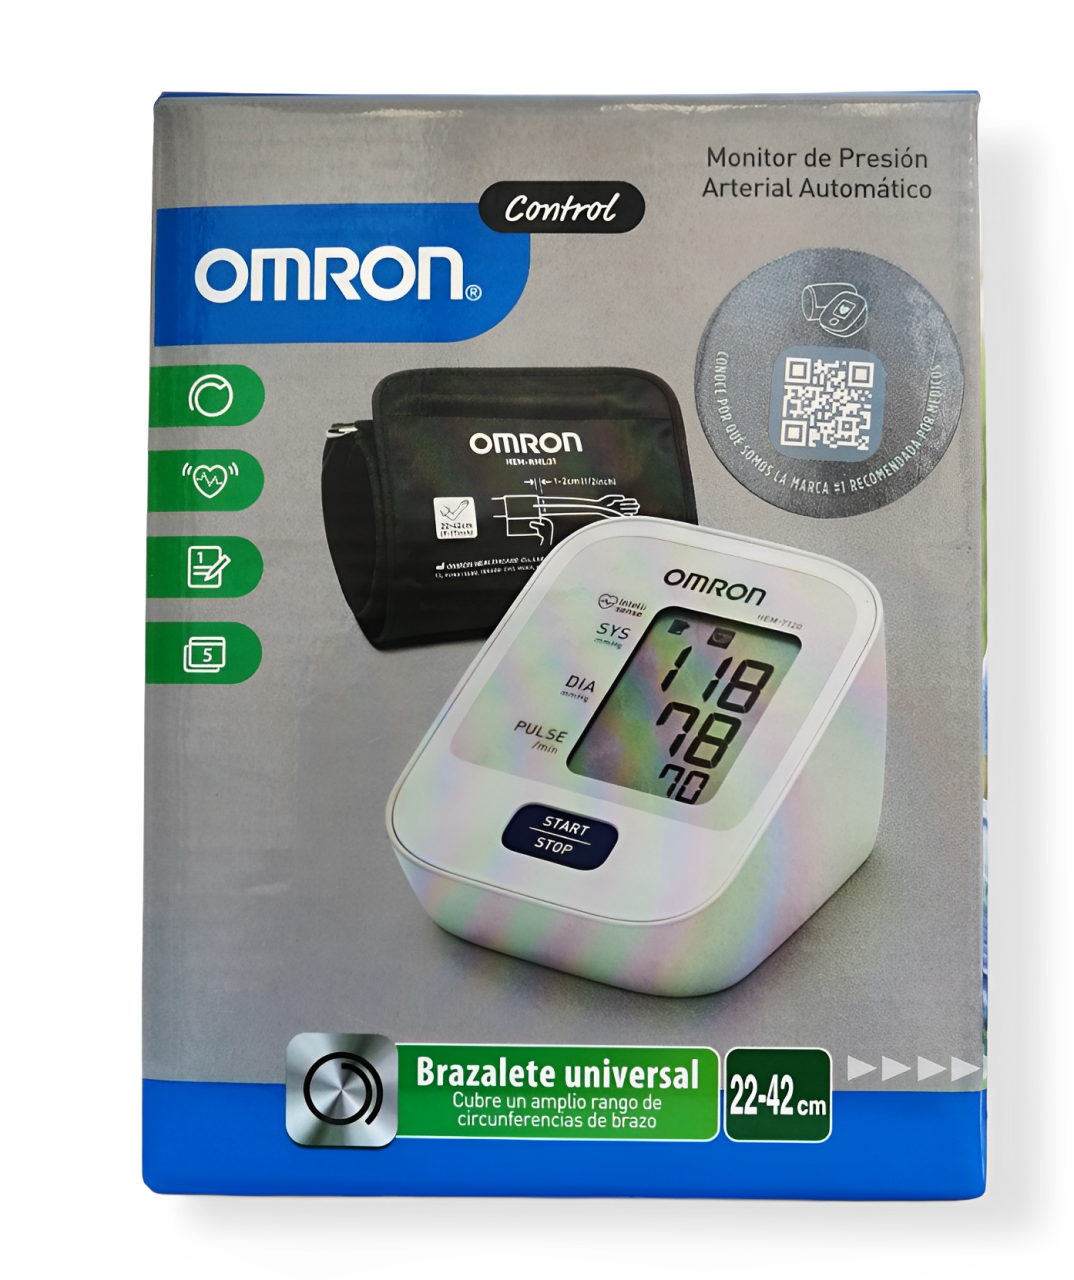 Monitor de presión arterial de barzo Omron